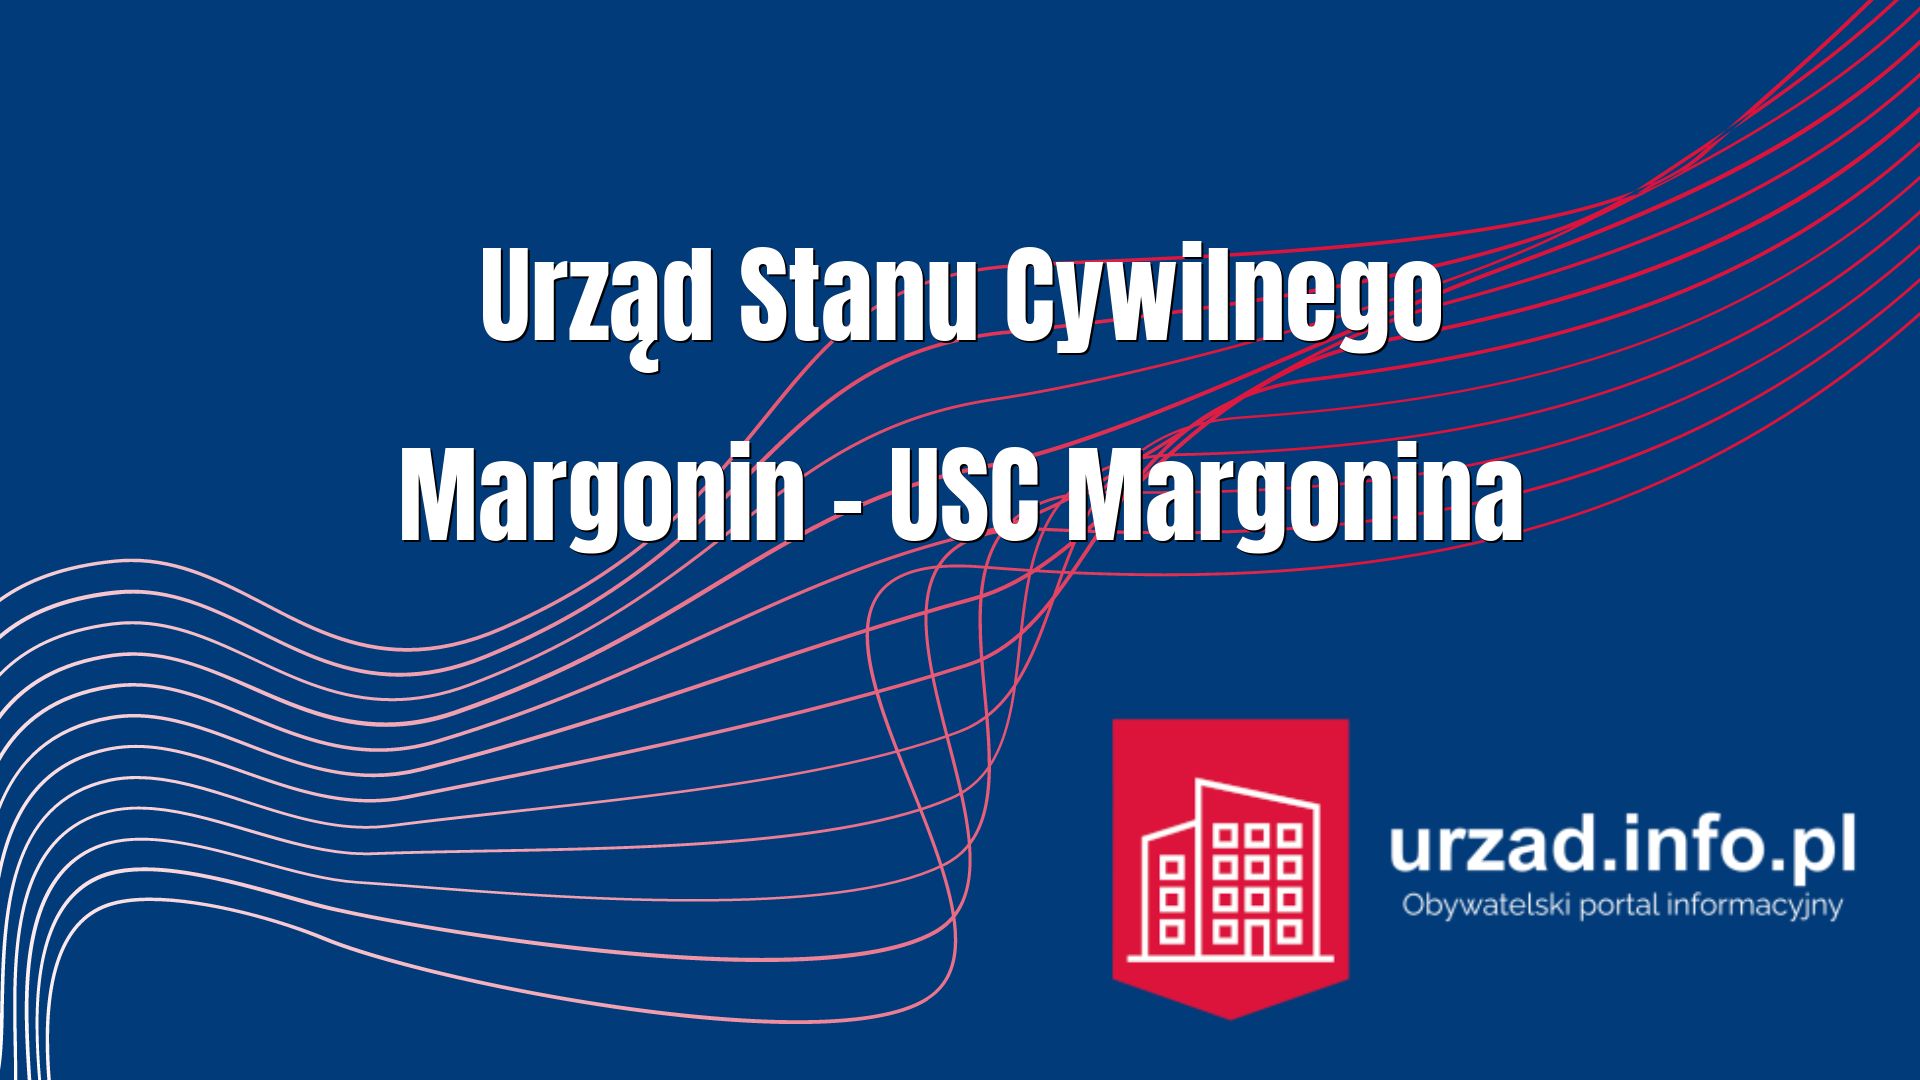 Urząd Stanu Cywilnego Margonin – USC Margonina